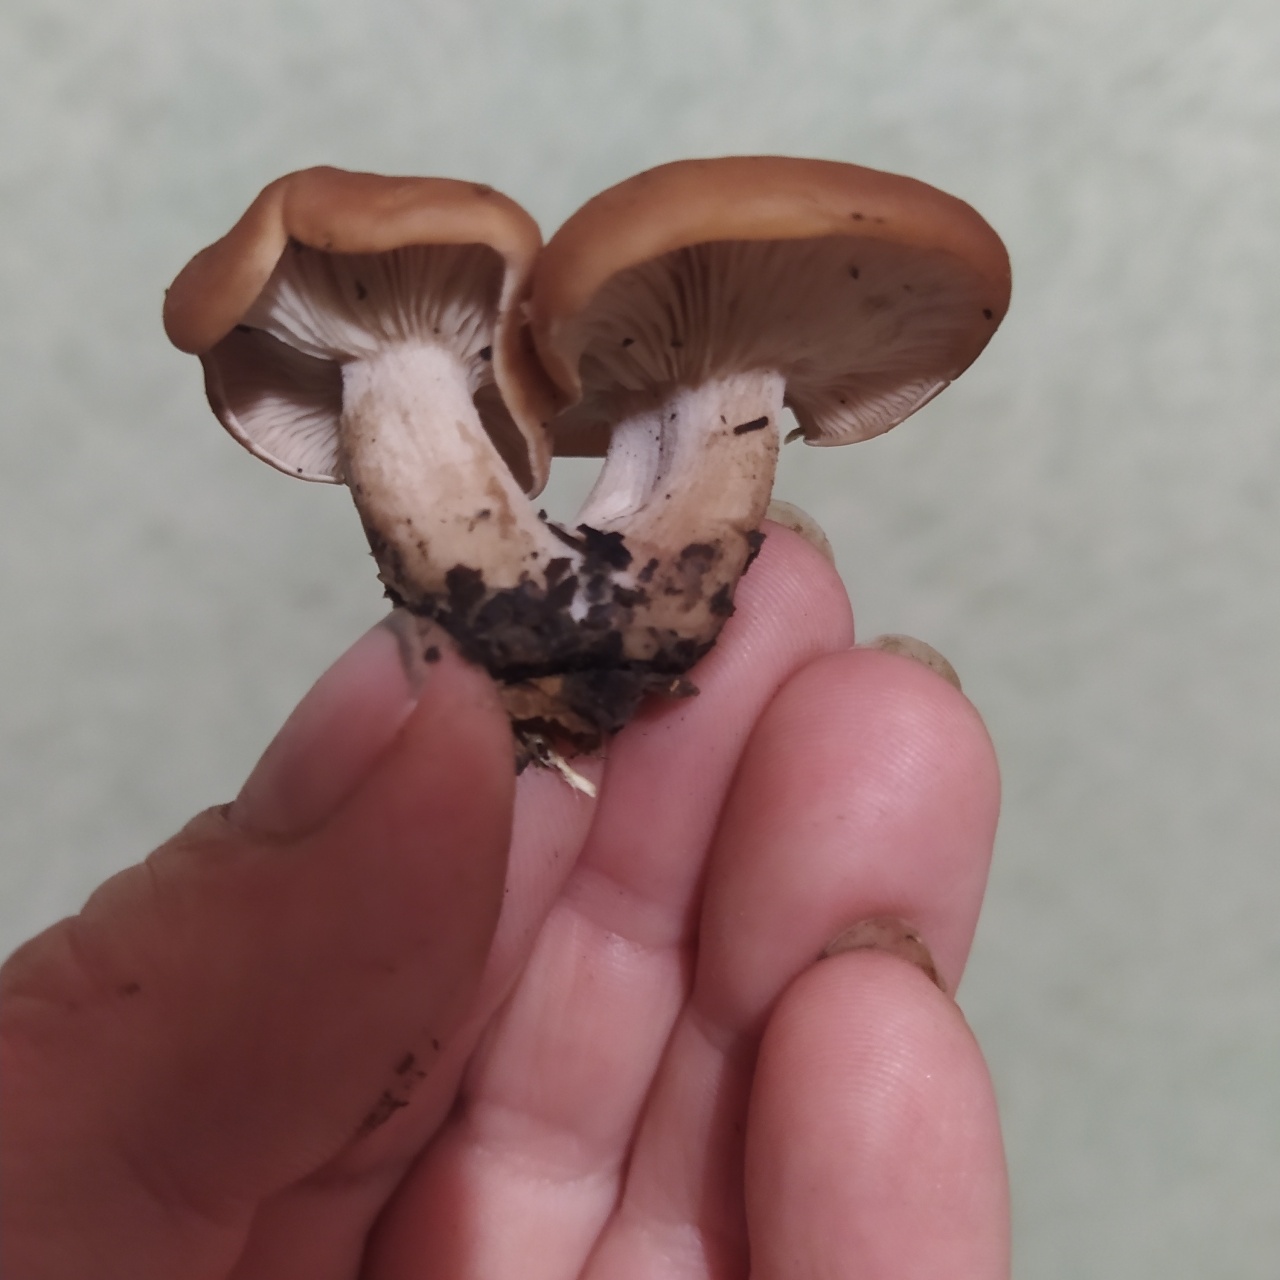 распознавать грибов по фото